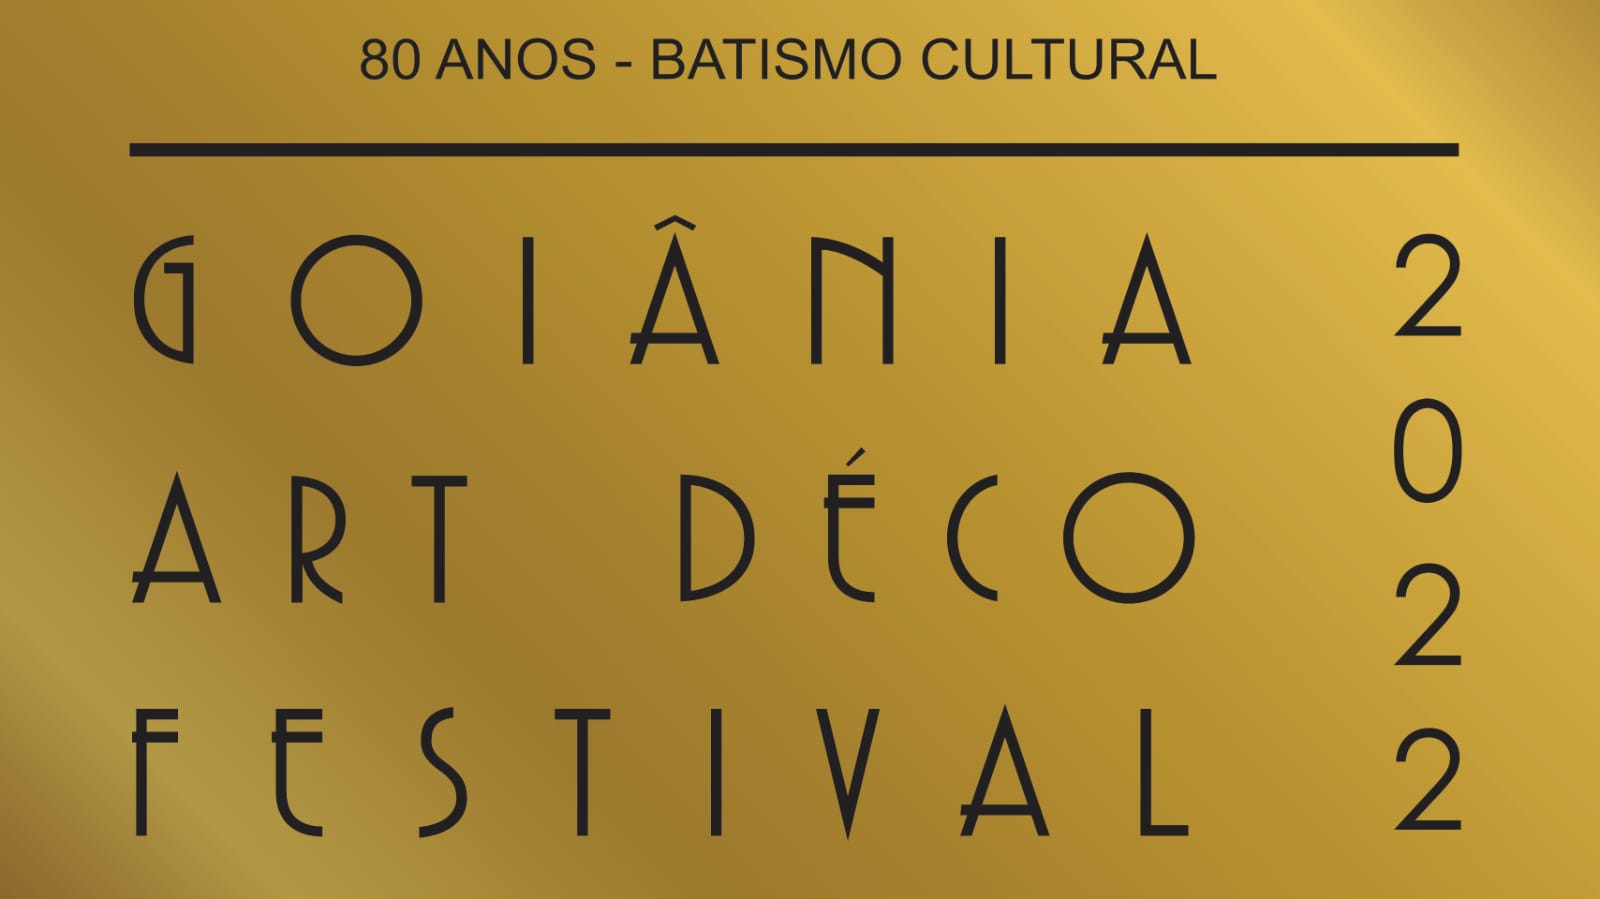 Goiânia Art Déco Festival 2022 celebra os 80 anos do batismo cultural